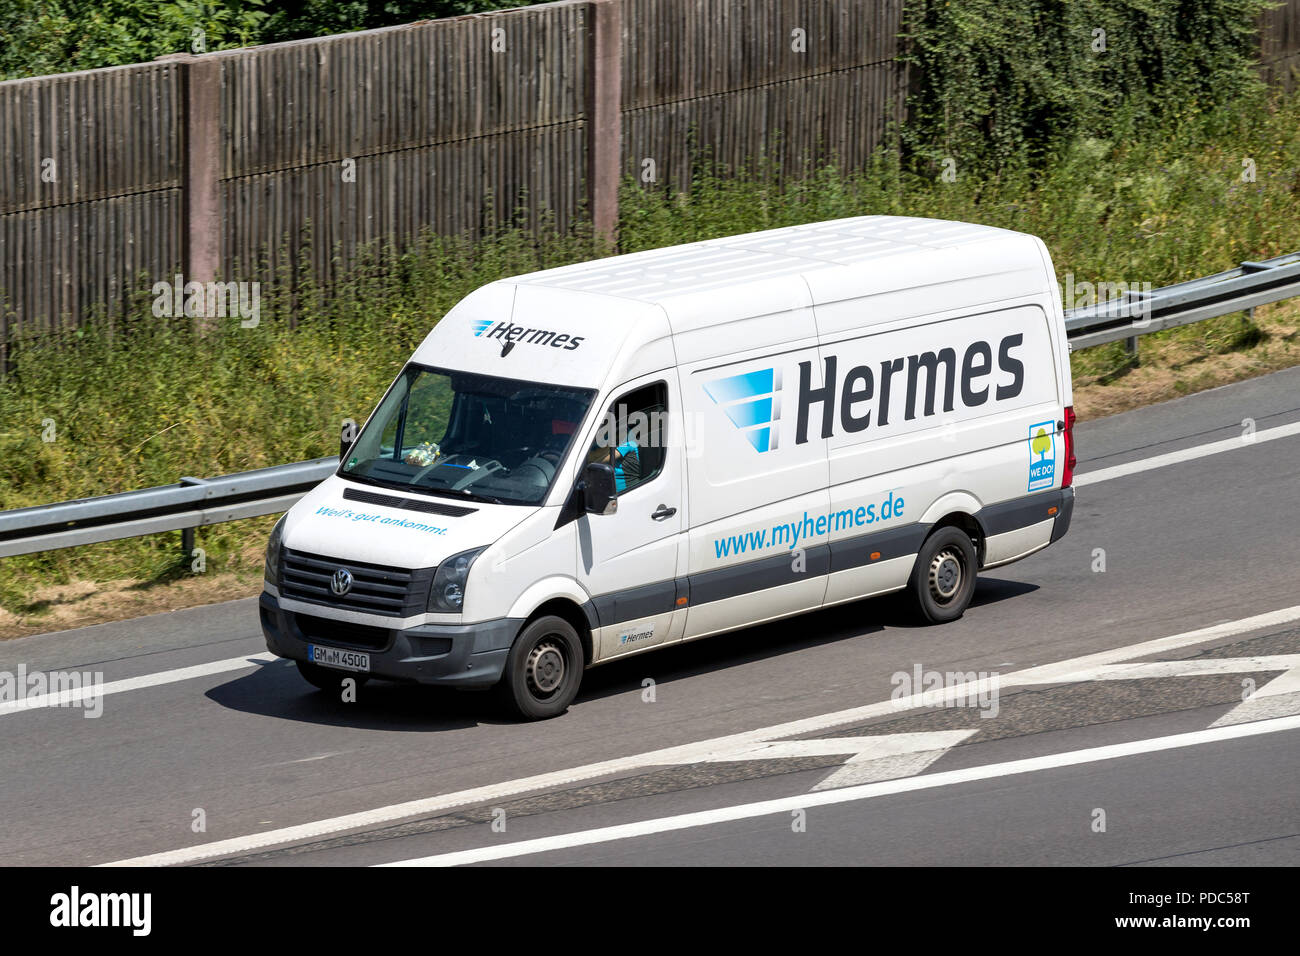 Hermes delivery van sur l'autoroute. Hermes est le plus grand fournisseur indépendant de post-livraison aux clients privés. Banque D'Images